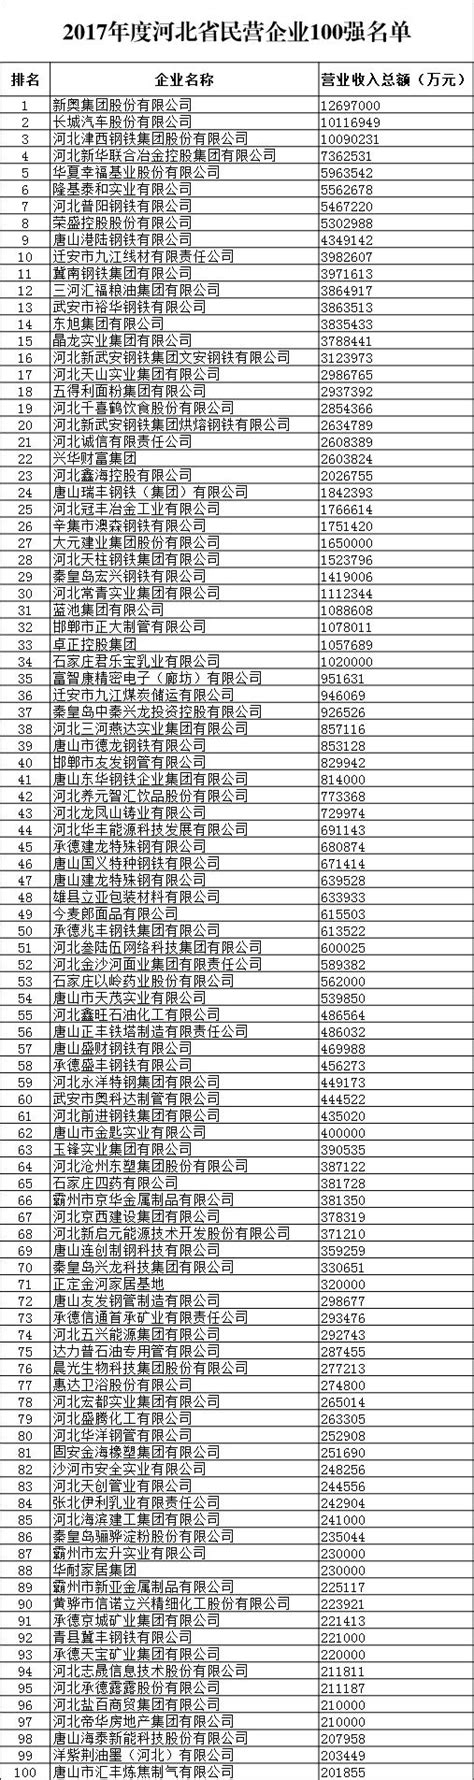 快看，河北省民营企业100强名单公布啦！